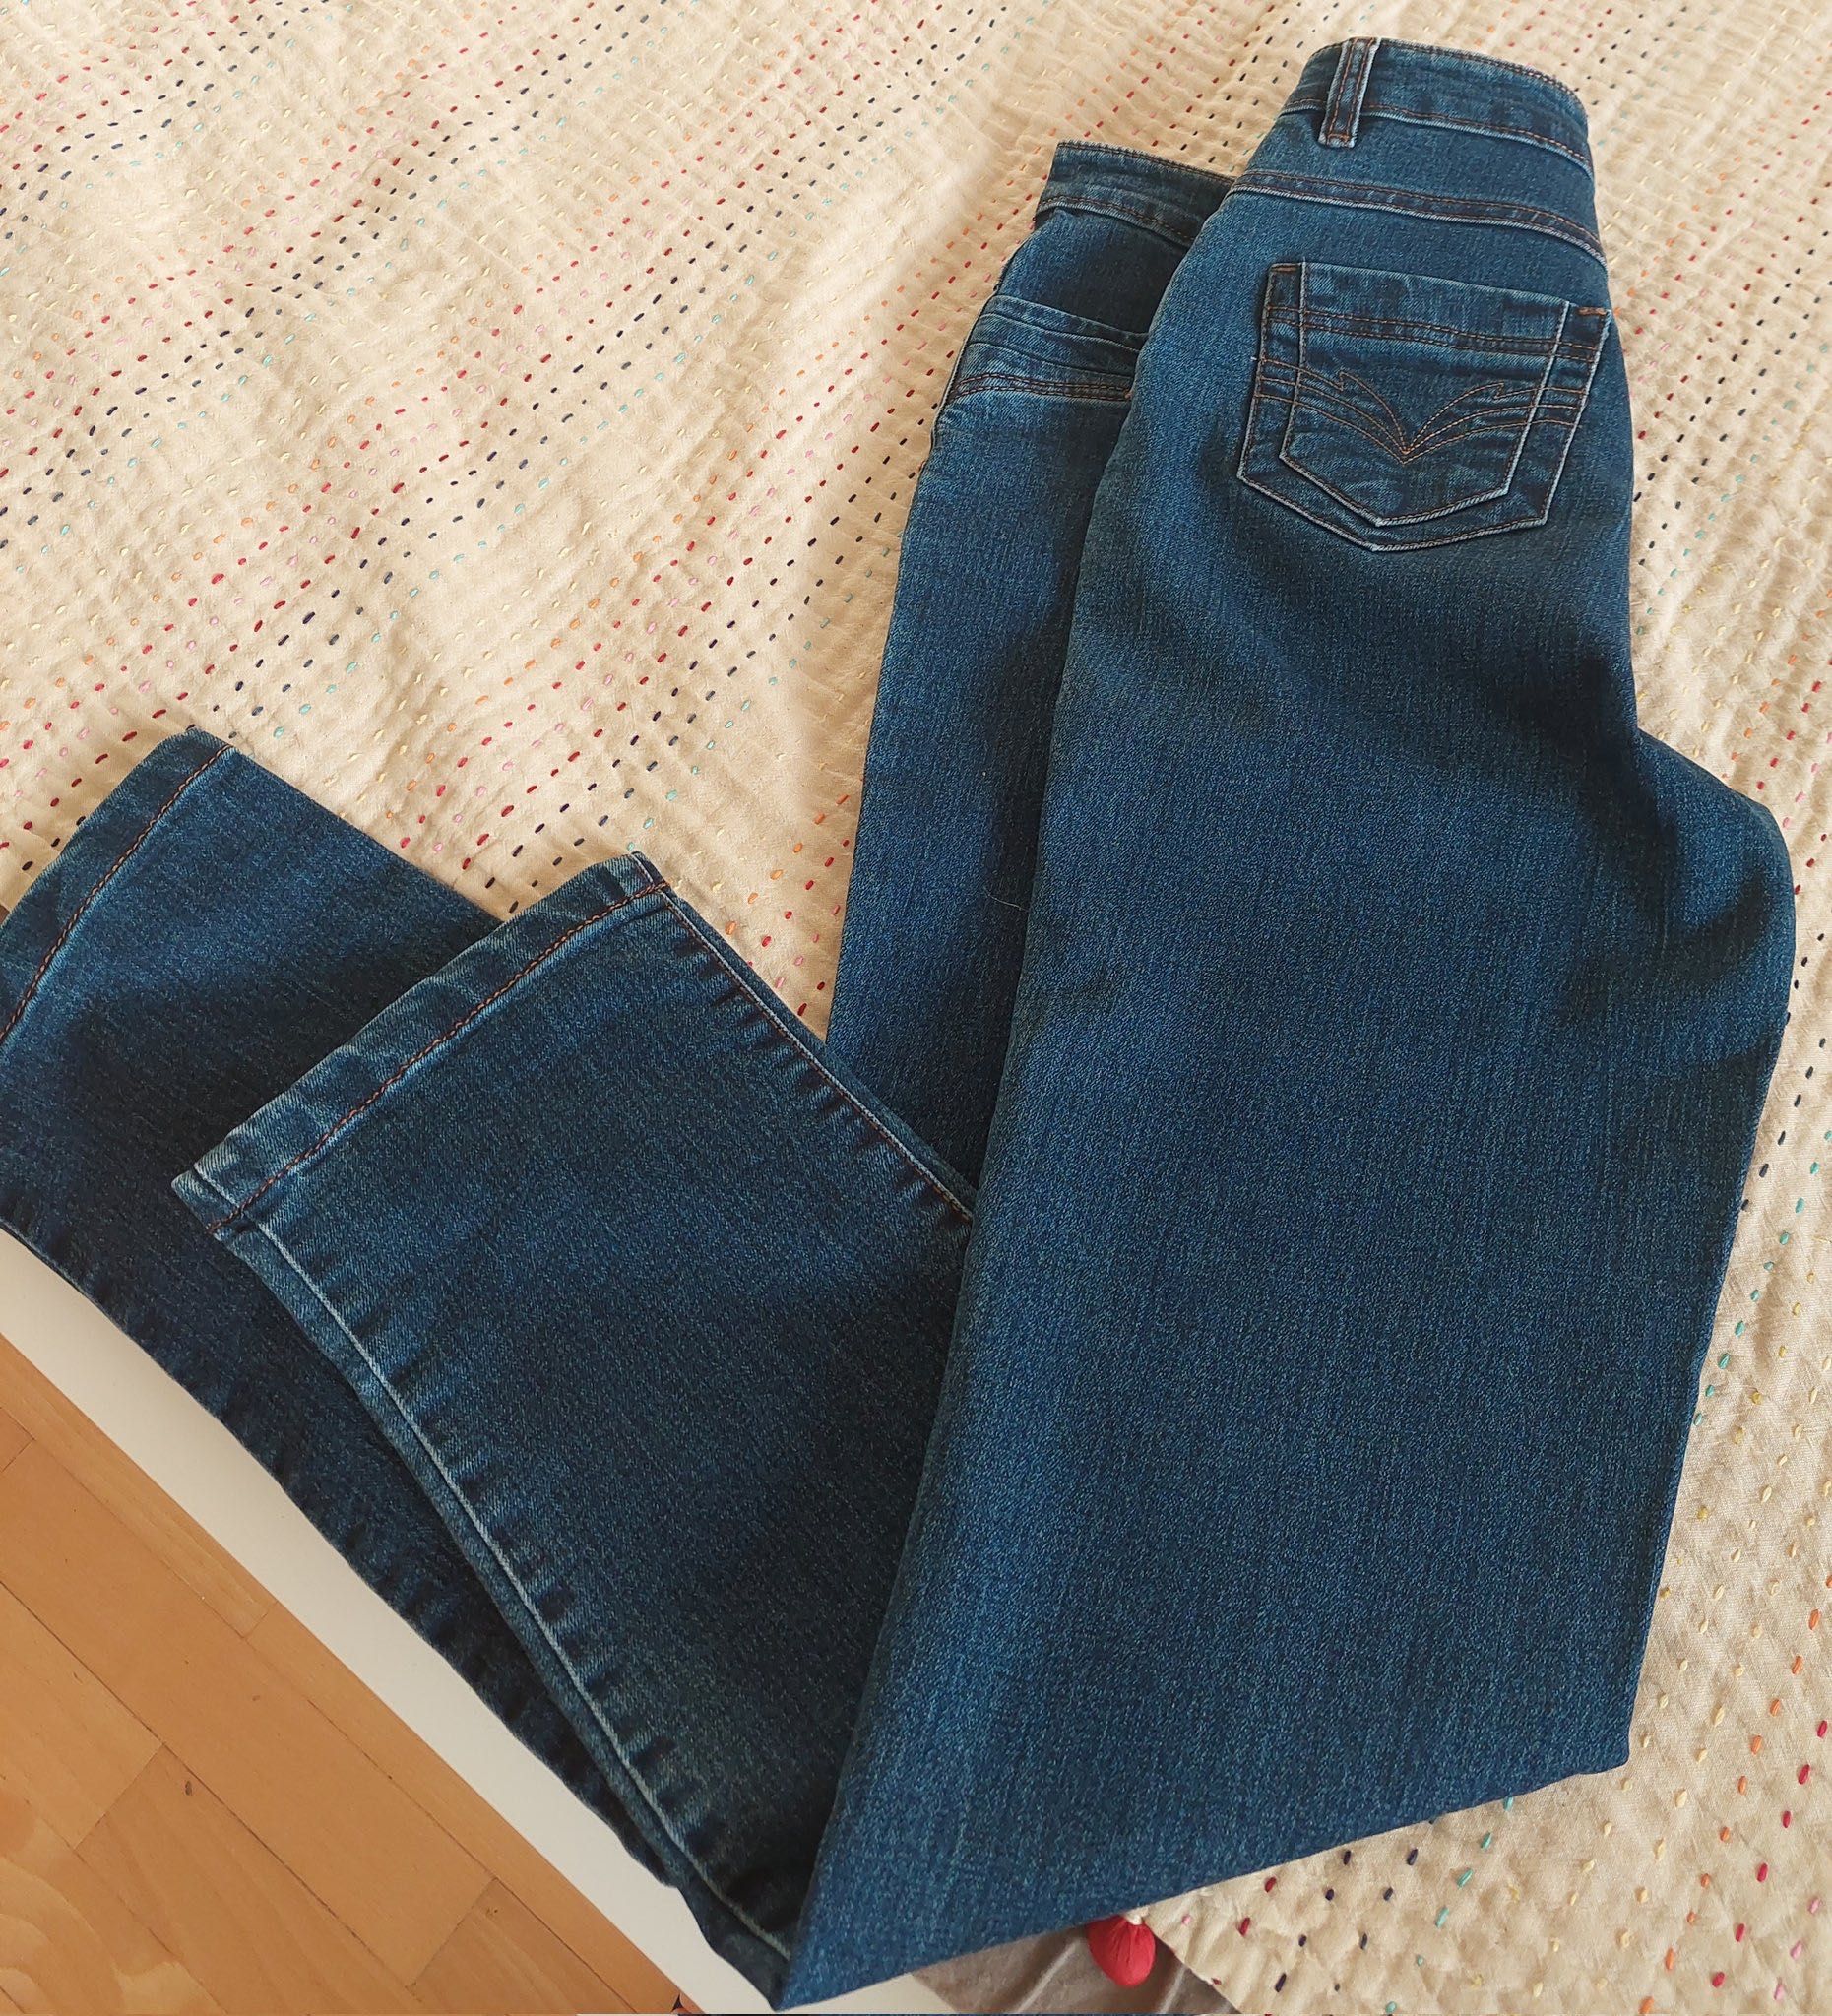 Damskie spodnie jeans rozmiar 36 niebieskie klasyczne stan idealny